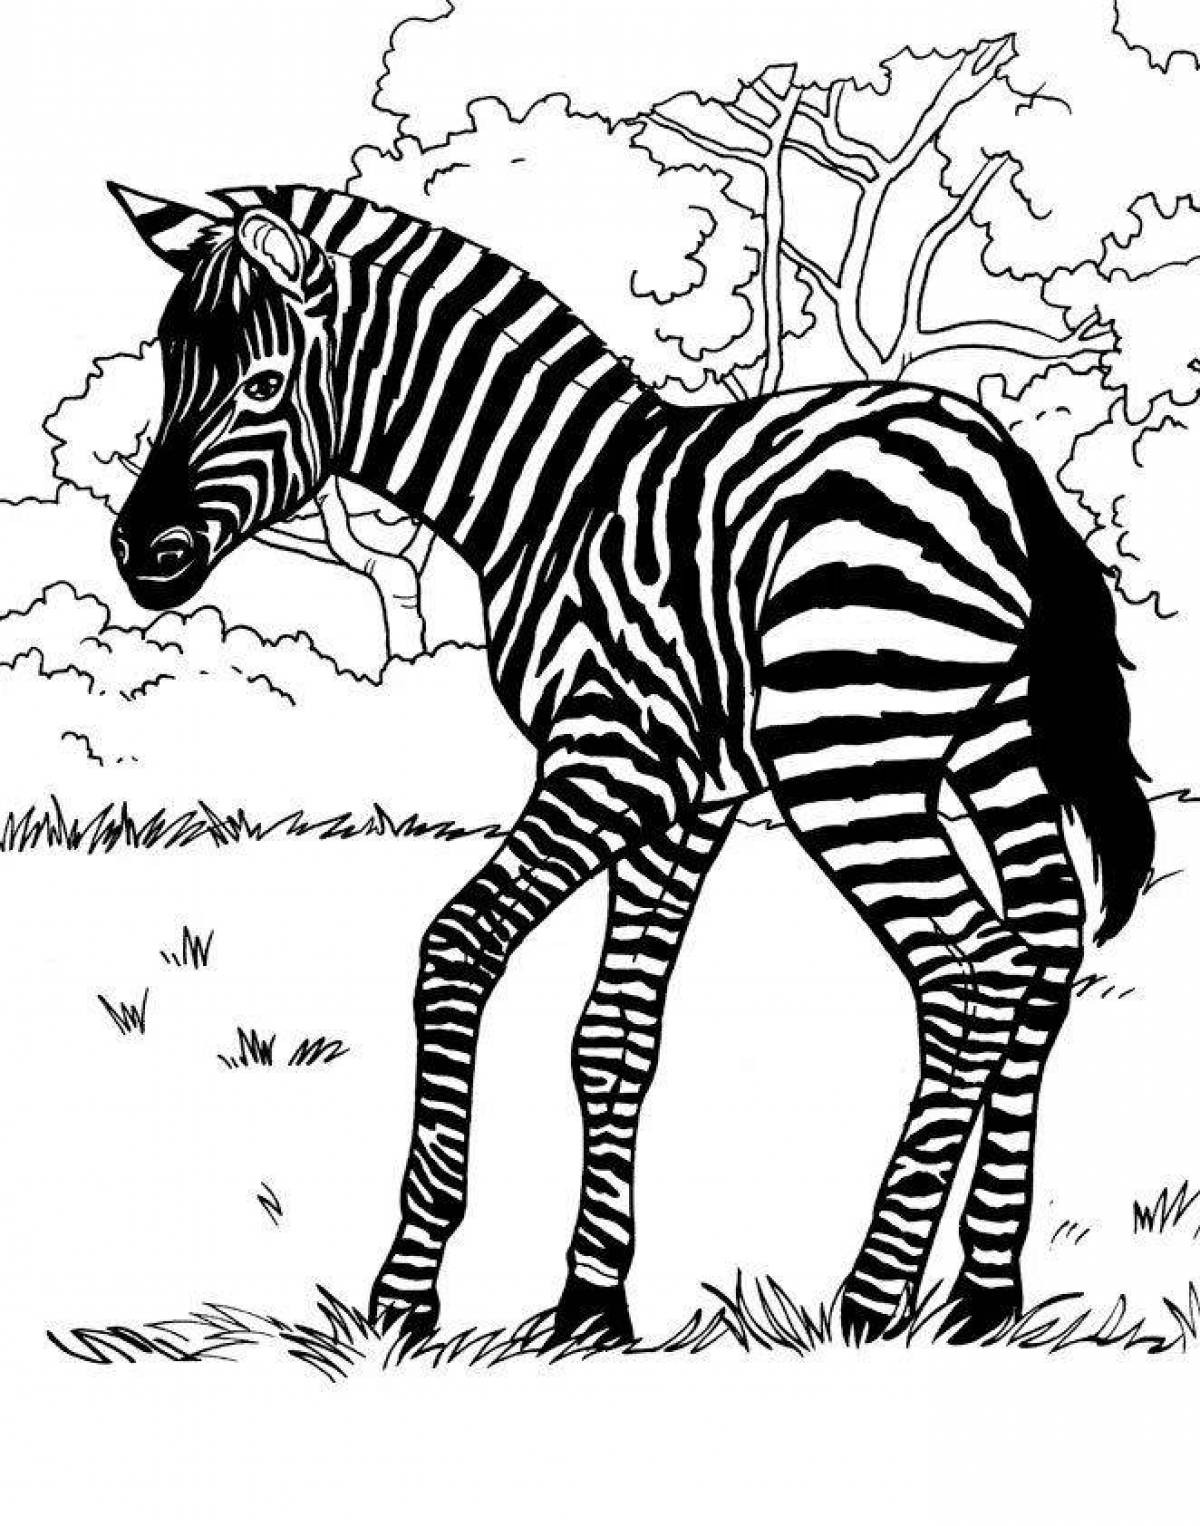 A striking checkered zebra